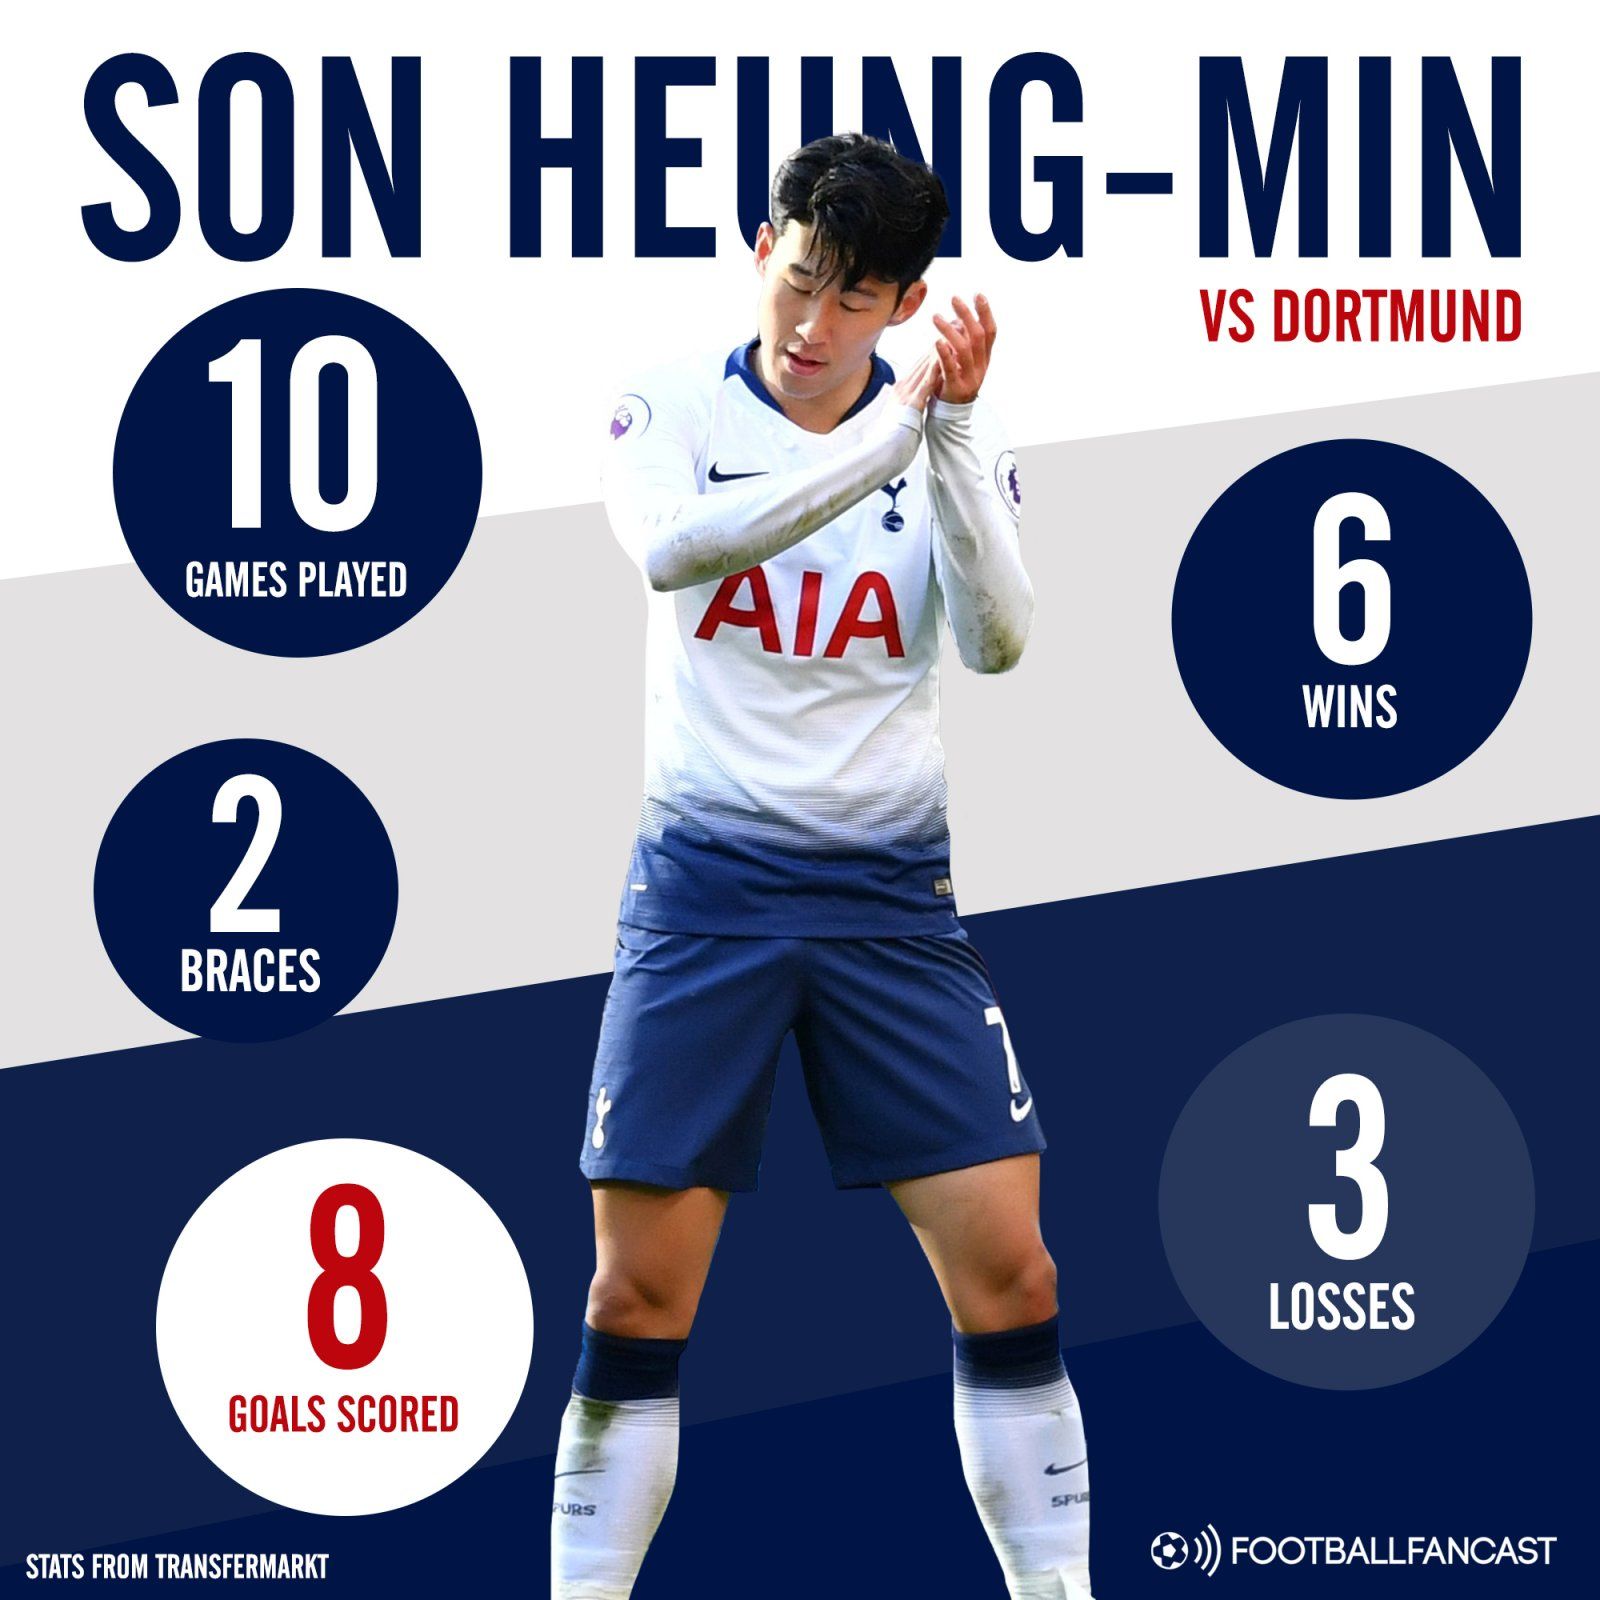 Heung-min Son's stats vs Dortmund